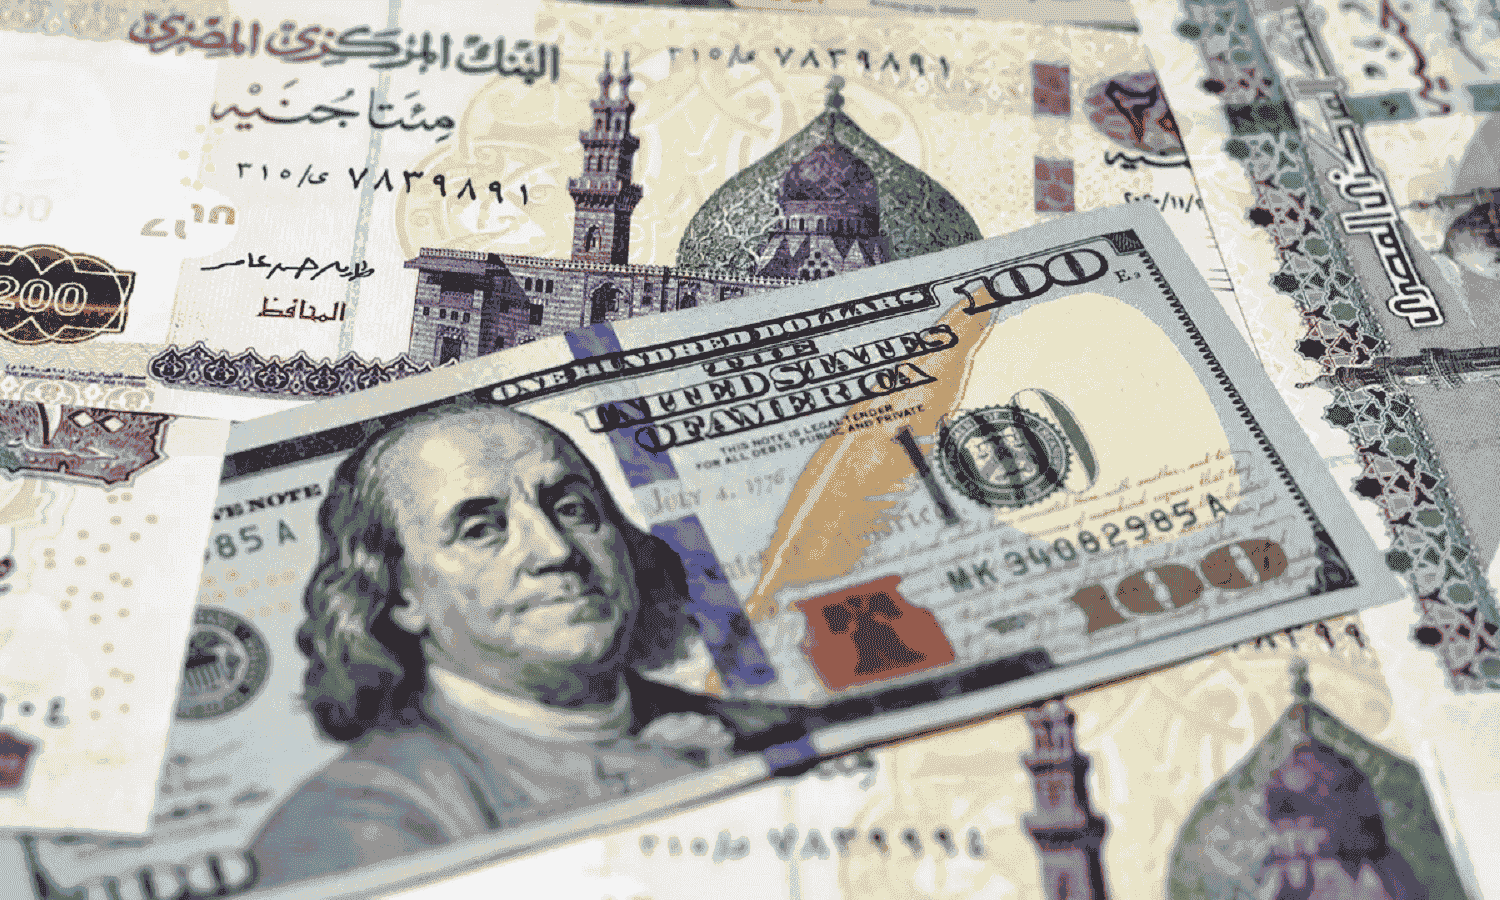 جولدمان ساكس وبنك بيكتيت ينصحان بشراء السندات المصرية
